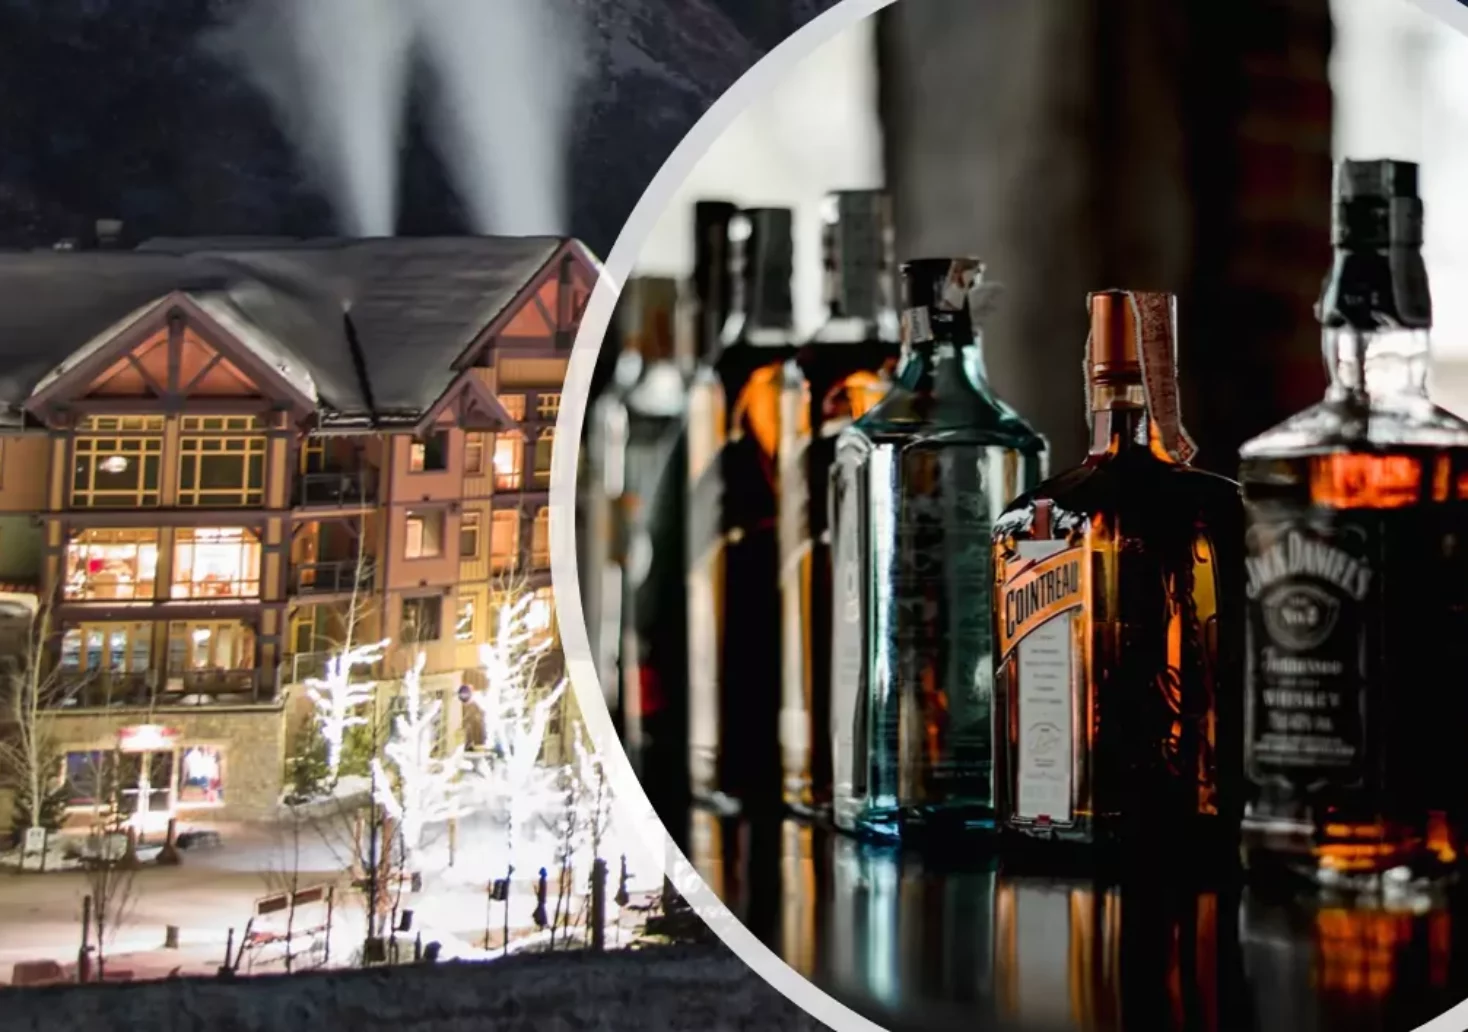 Bild auf 5min.at zeigt eine Montage. Links ist ein Skigebiet zu sehen, rechts mehrere Flaschen mit hochprozentigem Alkohol.